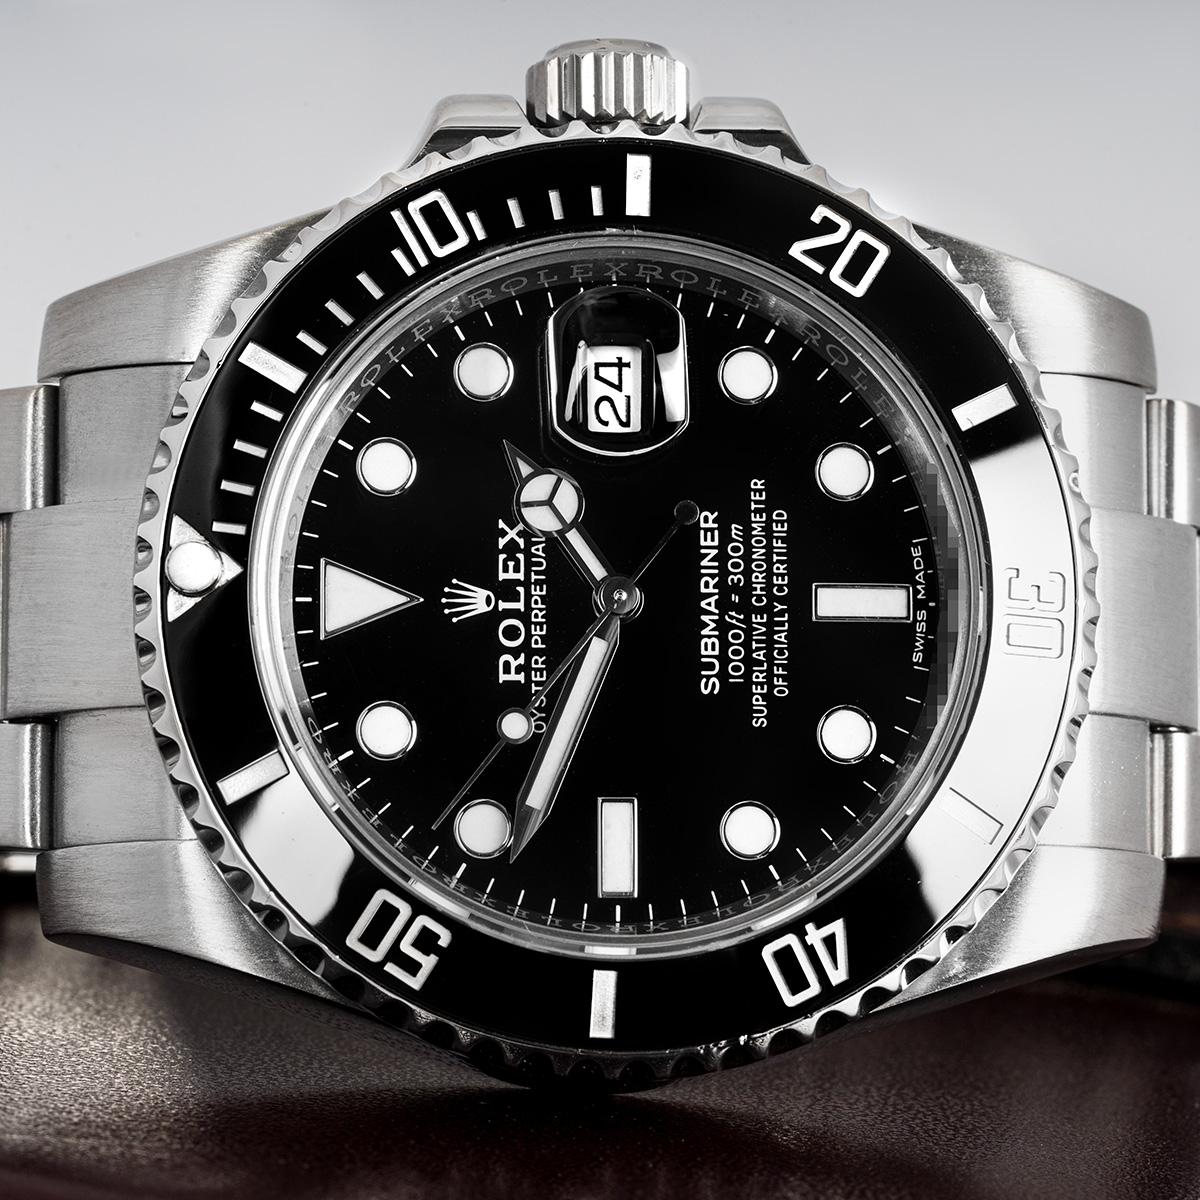 Eine 40 mm Submariner Date aus Stahl von Rolex. Mit schwarzem Zifferblatt, einseitig drehbarer Lünette und schwarzem Einsatz mit 60-Minuten-Teilung.

Ausgestattet mit einem kratzfesten Saphirglas und angetrieben von einem Automatikwerk. Die Uhr ist